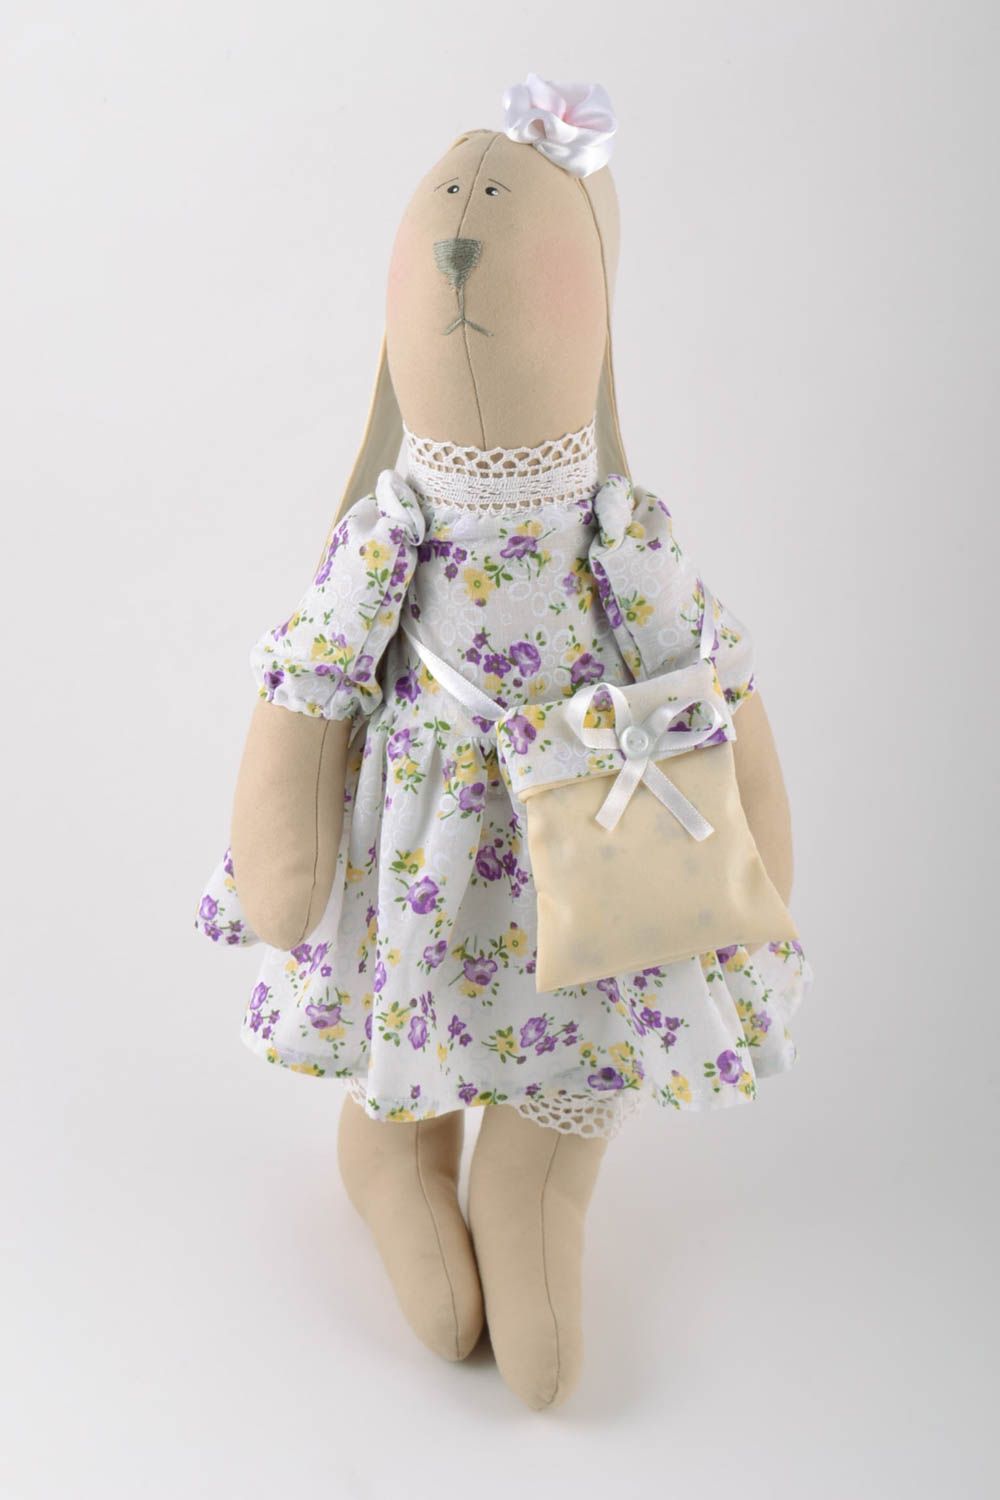 Textil Kuscheltier Hase im Kleid mit Tasche aus Leinen Spielzeug für Kinder  foto 4